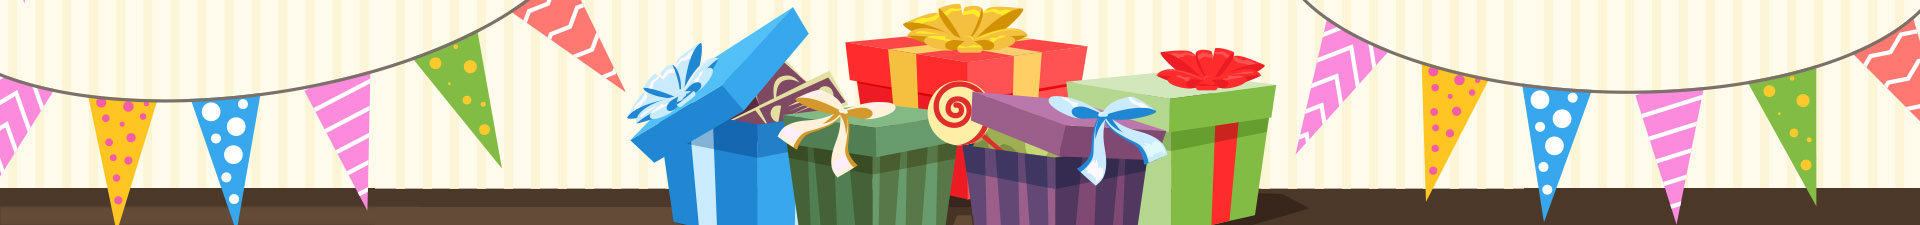 Artículos de regalo para niños al por mayor online.